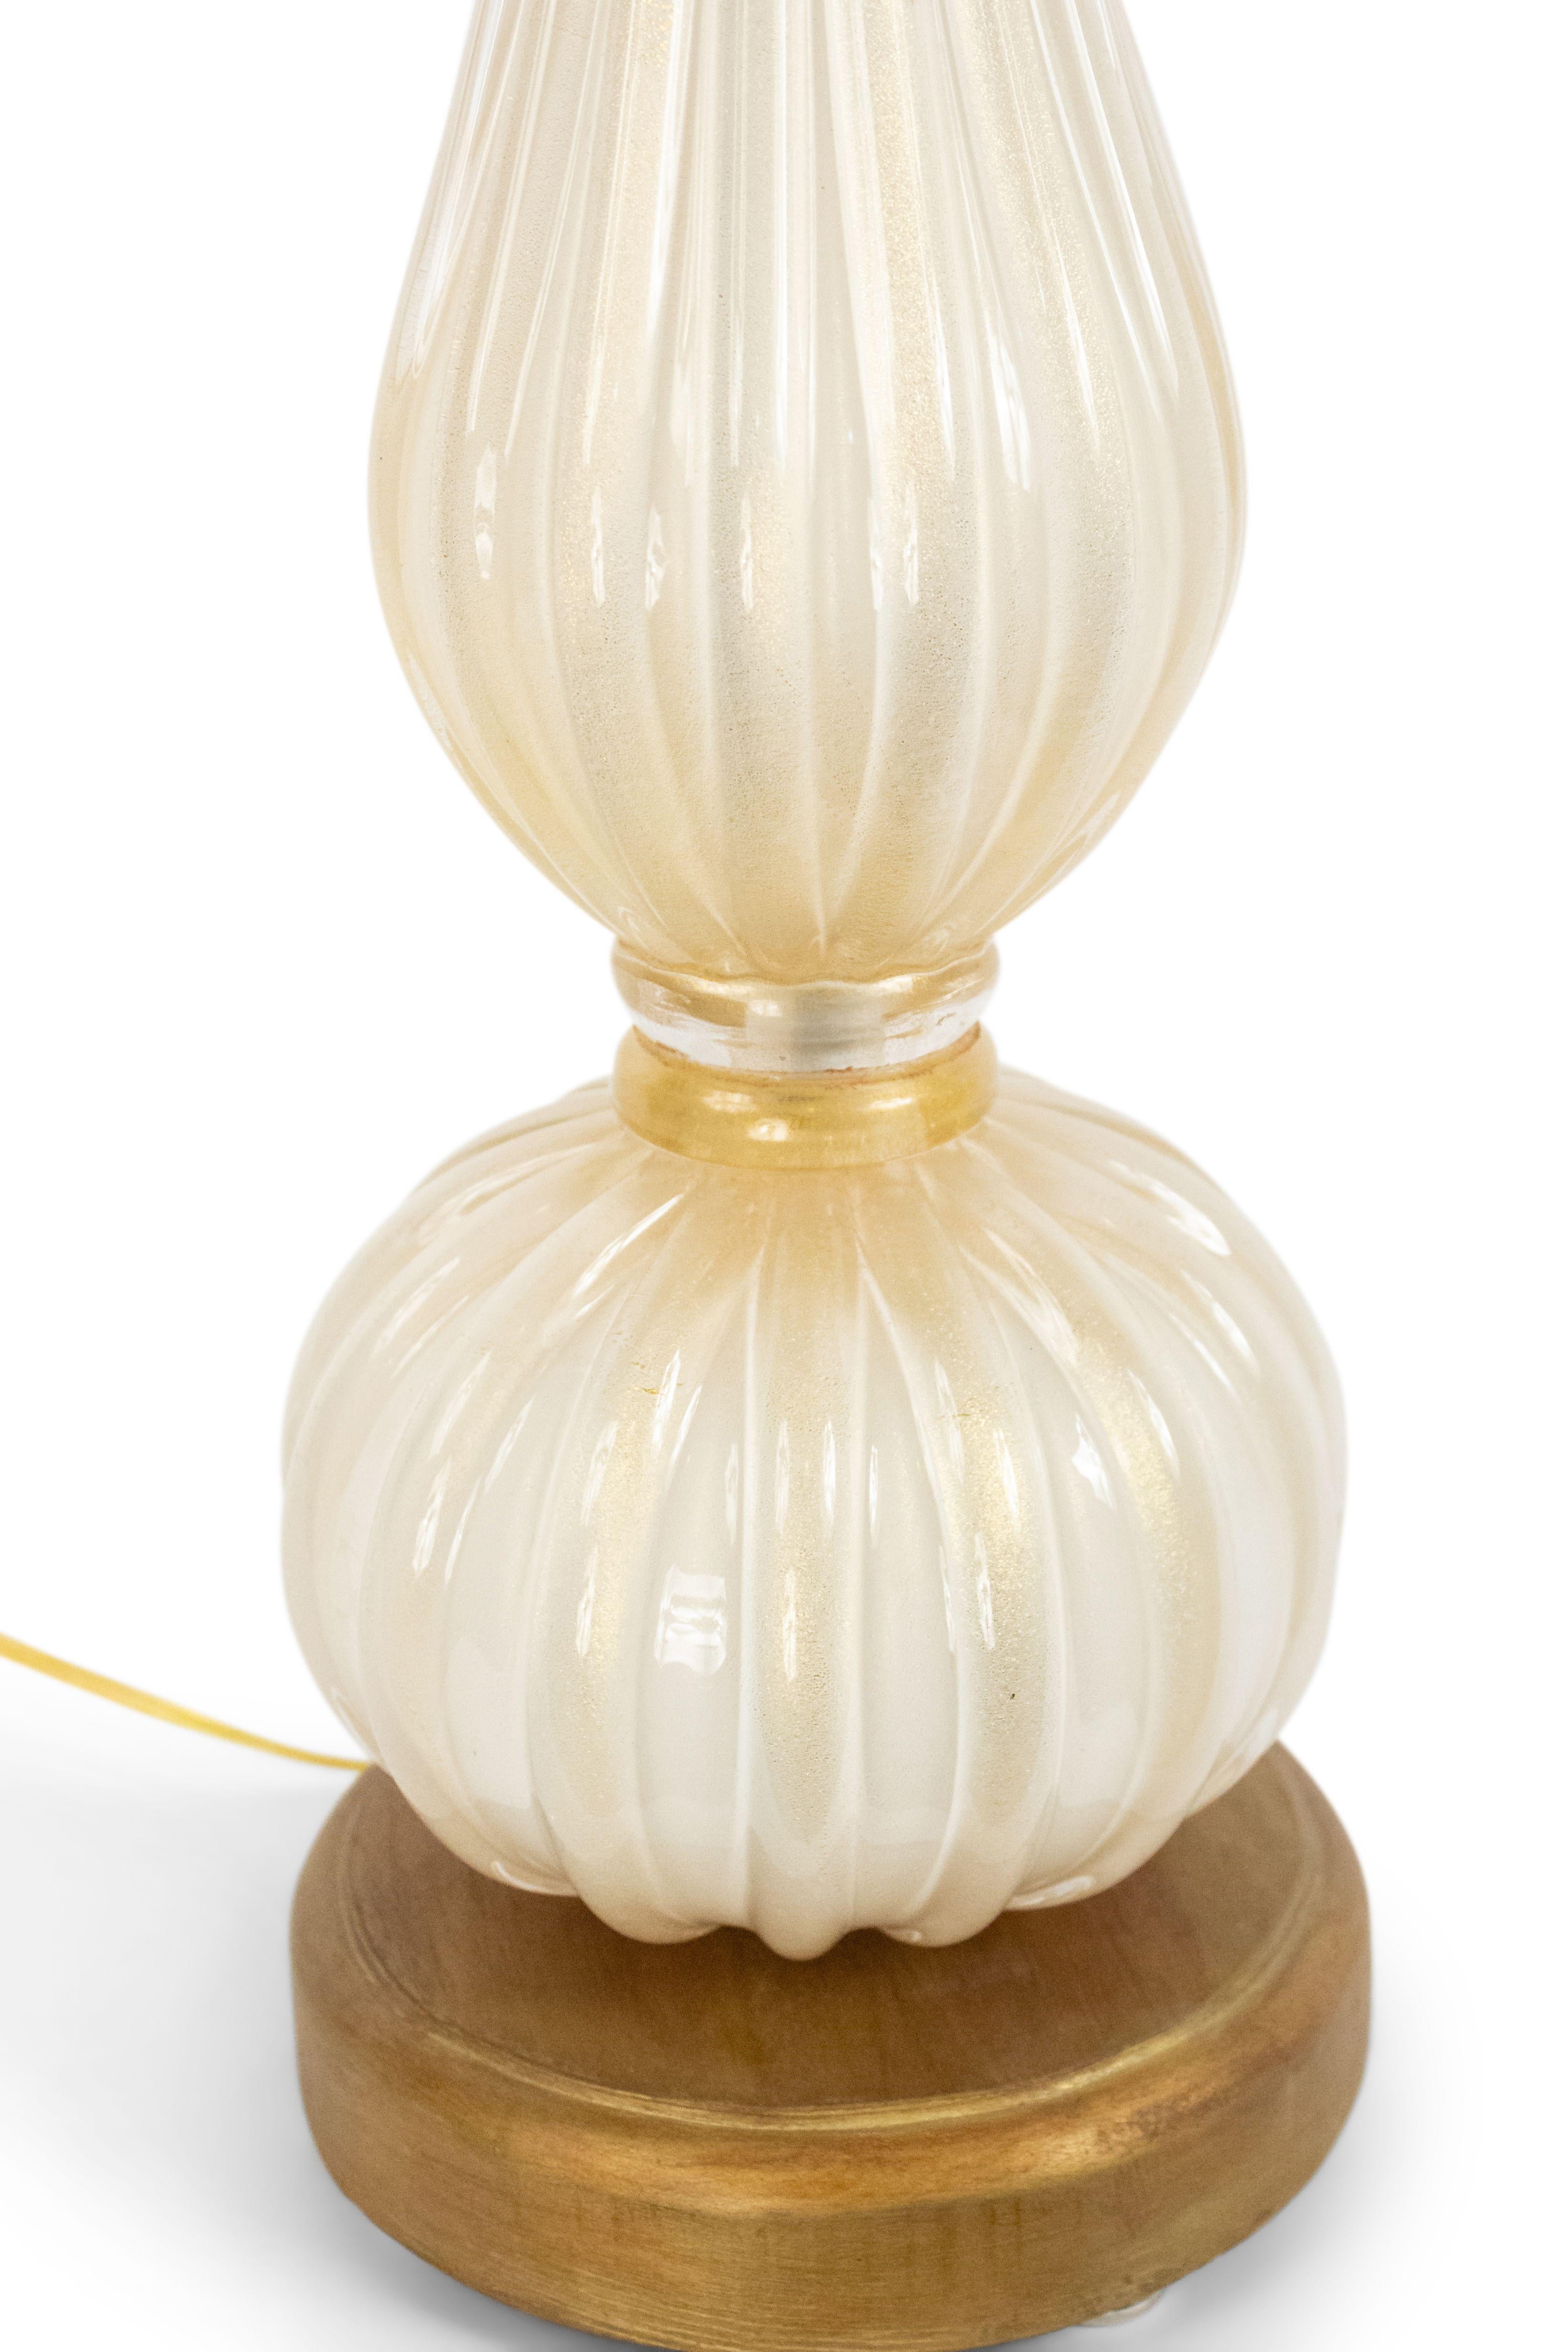 Mid-Century Modern Italian Midcentury Style White Glass Table Lamp